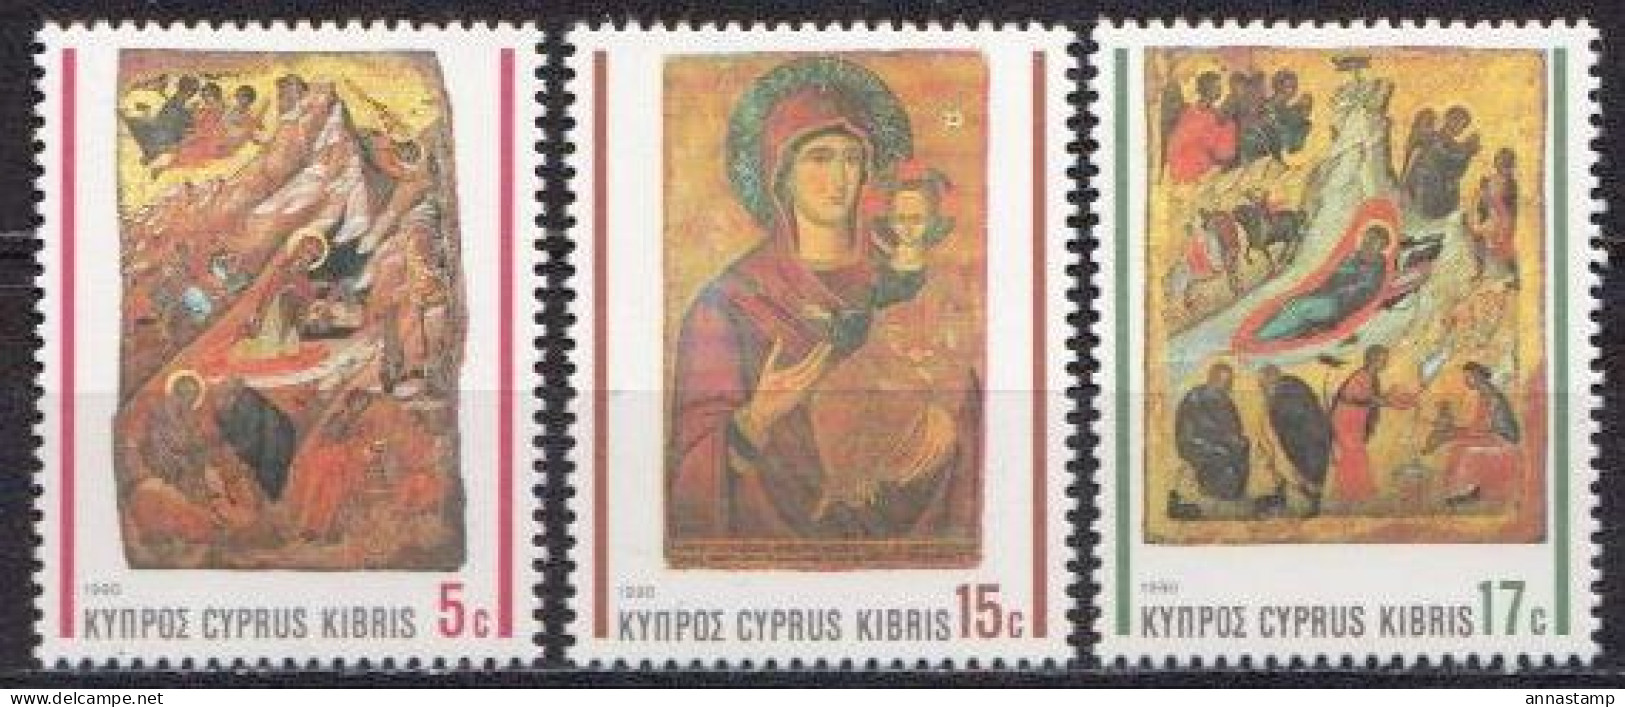 Cyprus MNH Set - Religious